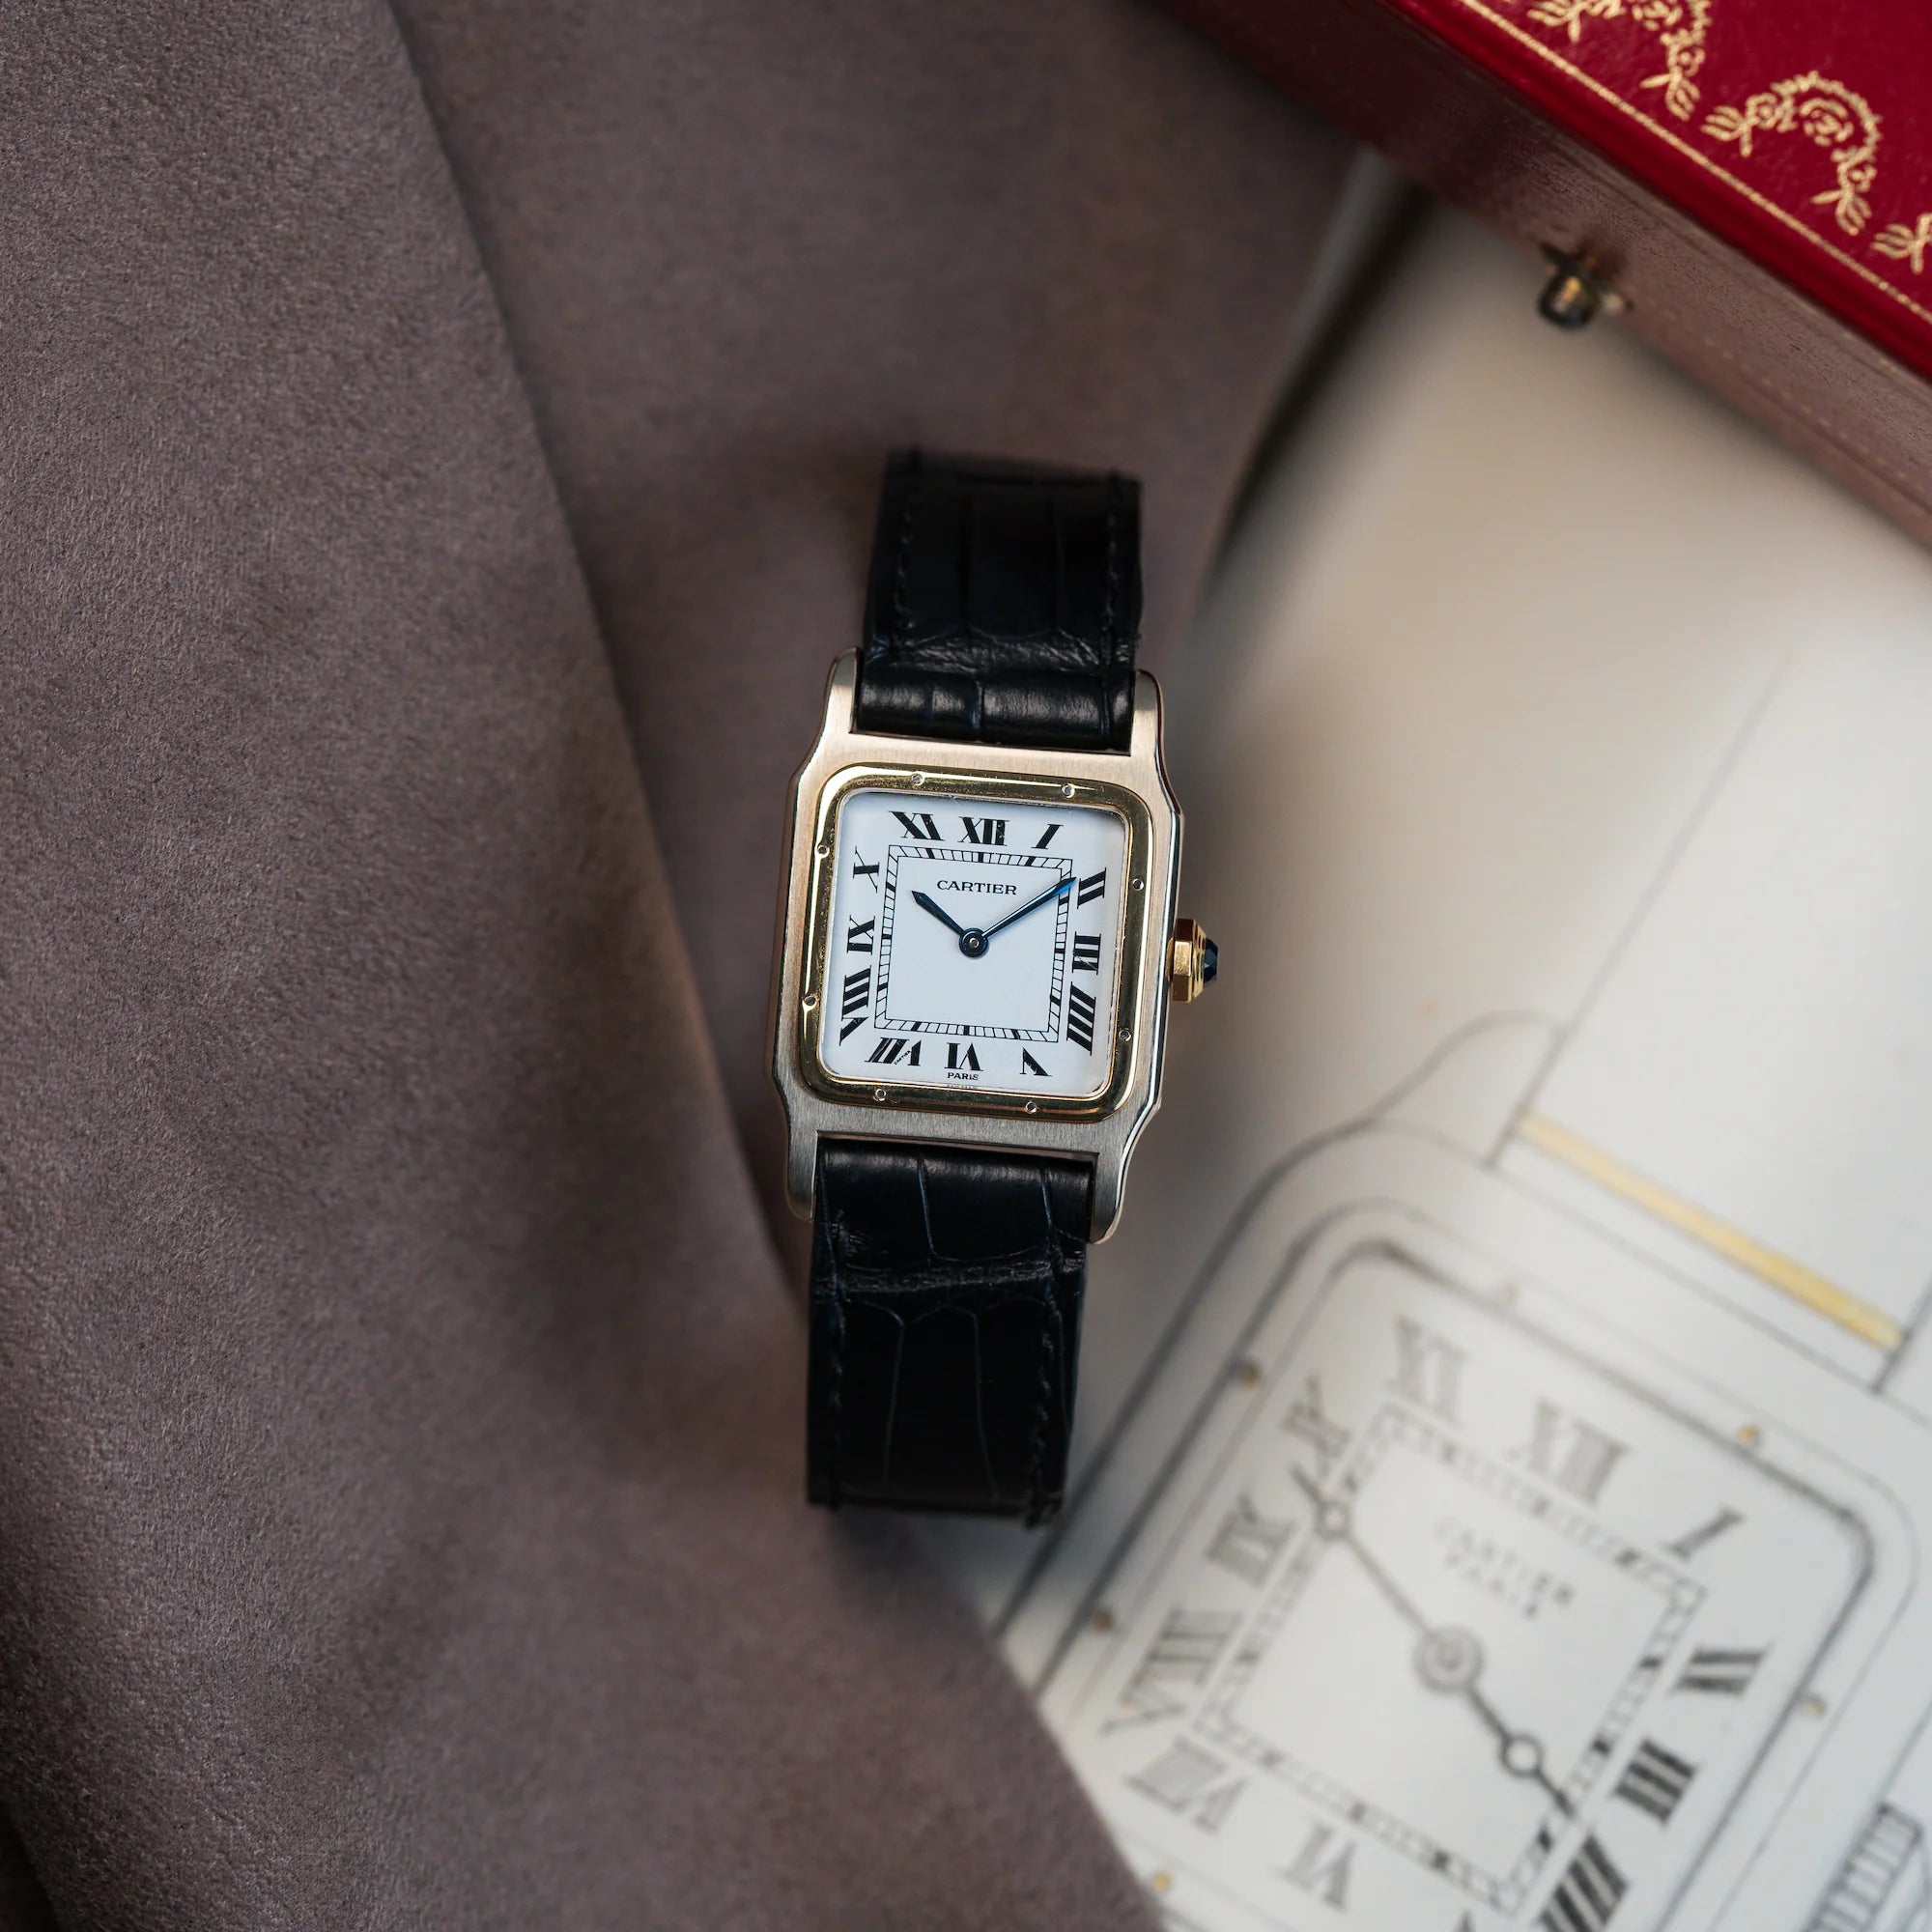 Produktfotografie der Cartier Santos Dumont "Deux Ors" mit  weißem Paris Dial mit einer Zeichnung als Hintergrund